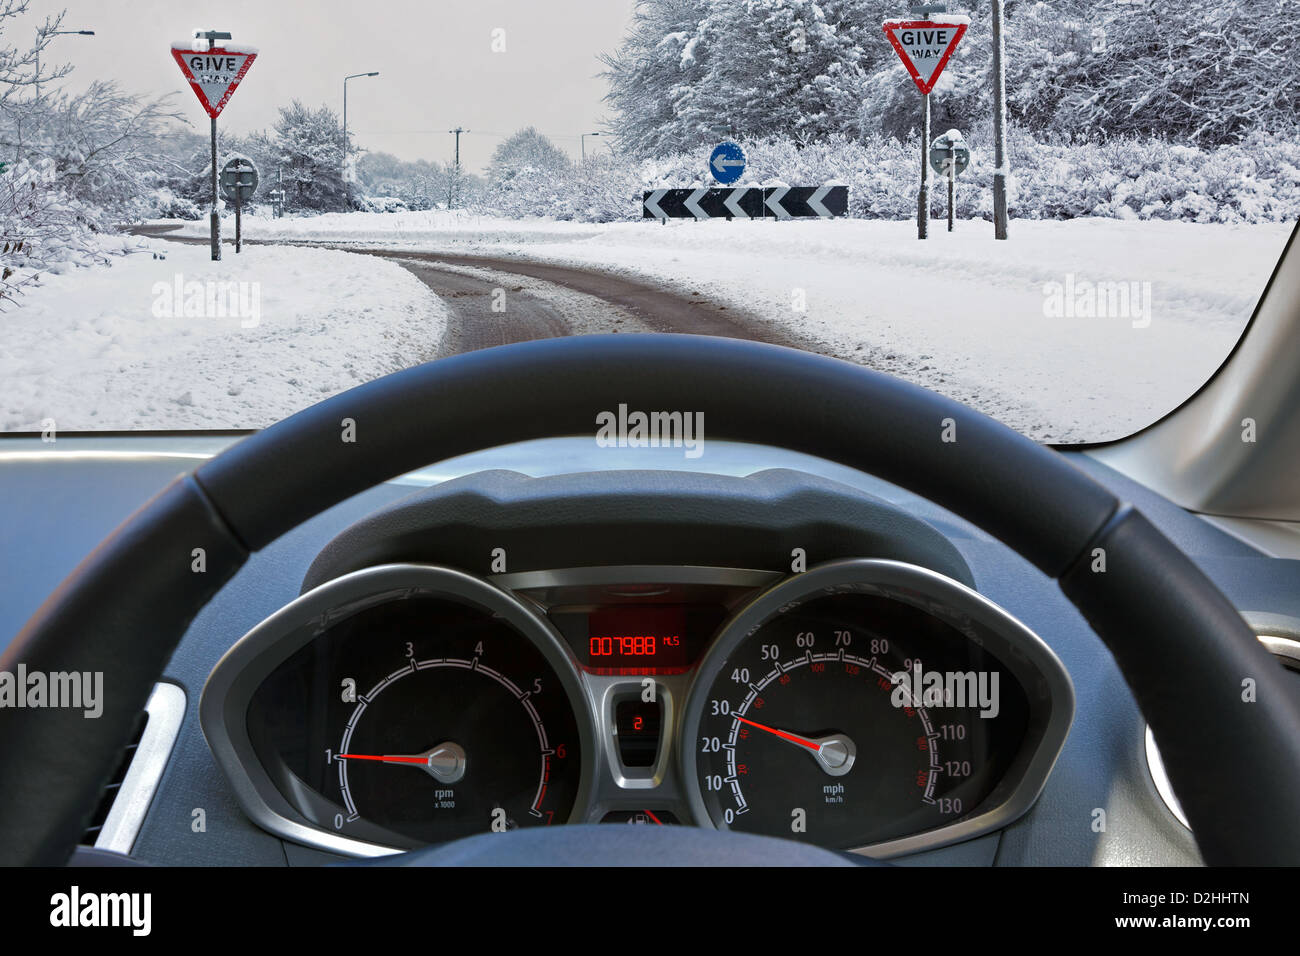 Les conducteurs de voiture à travers le pare-brise du véhicule en roulant sur une route couverte de neige Banque D'Images